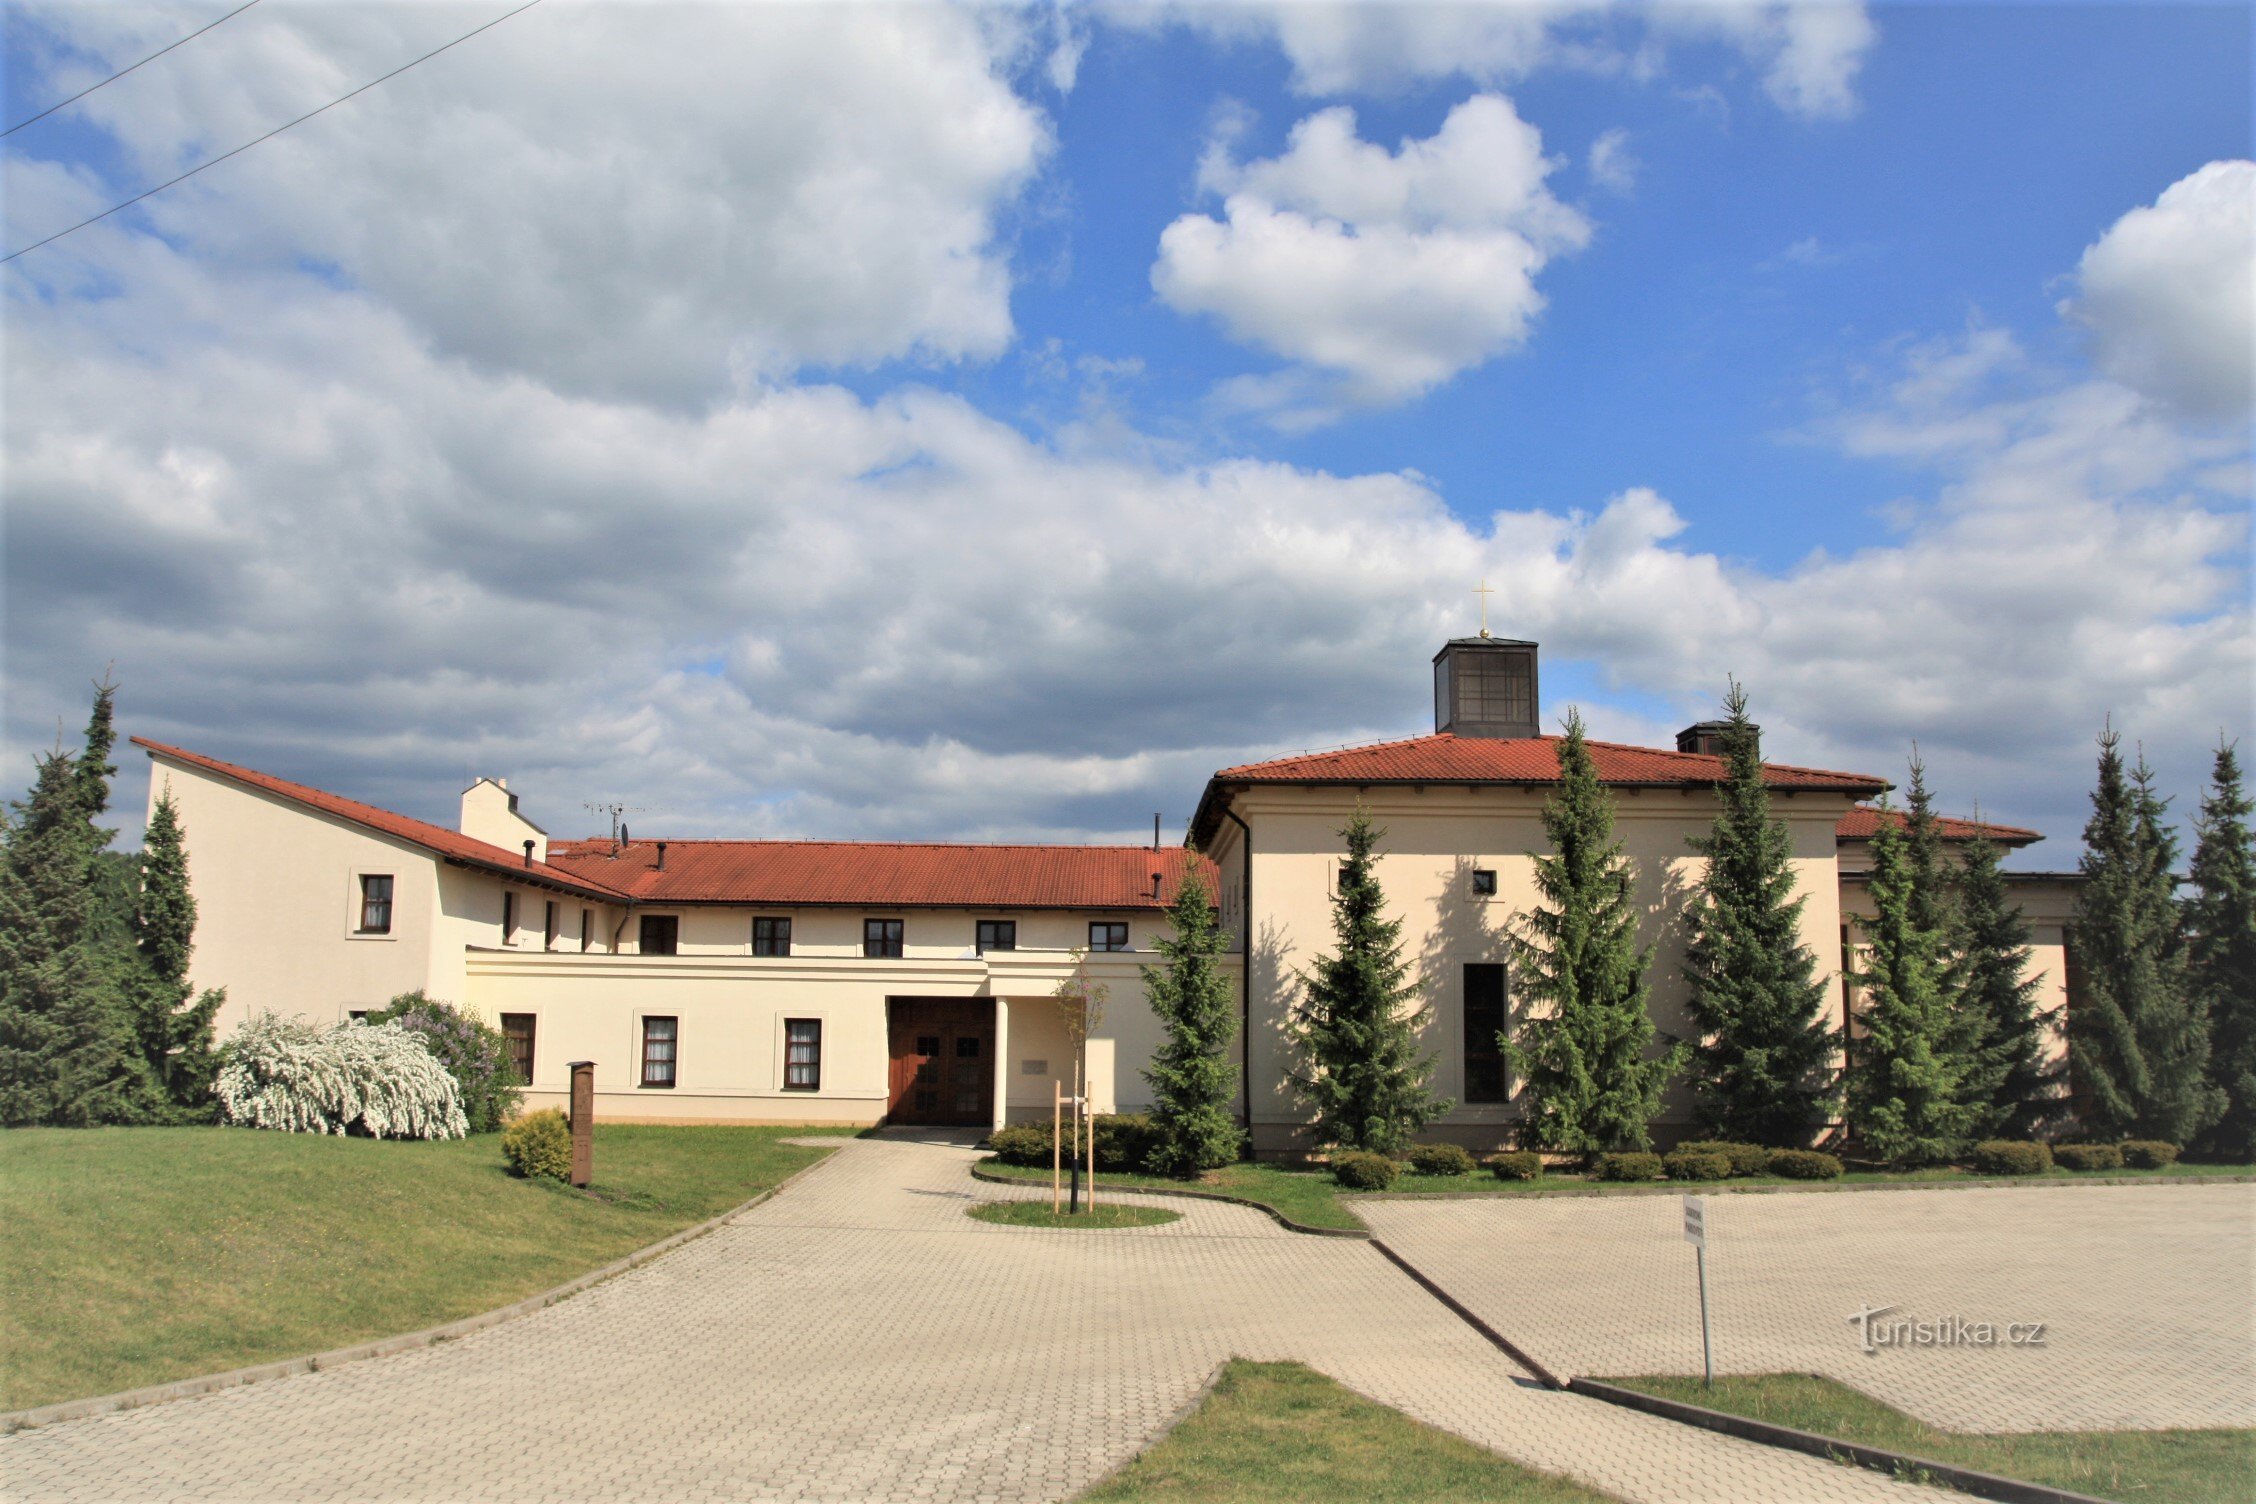 ルートは、クラリセク修道院近くのソベシツェから始まります。